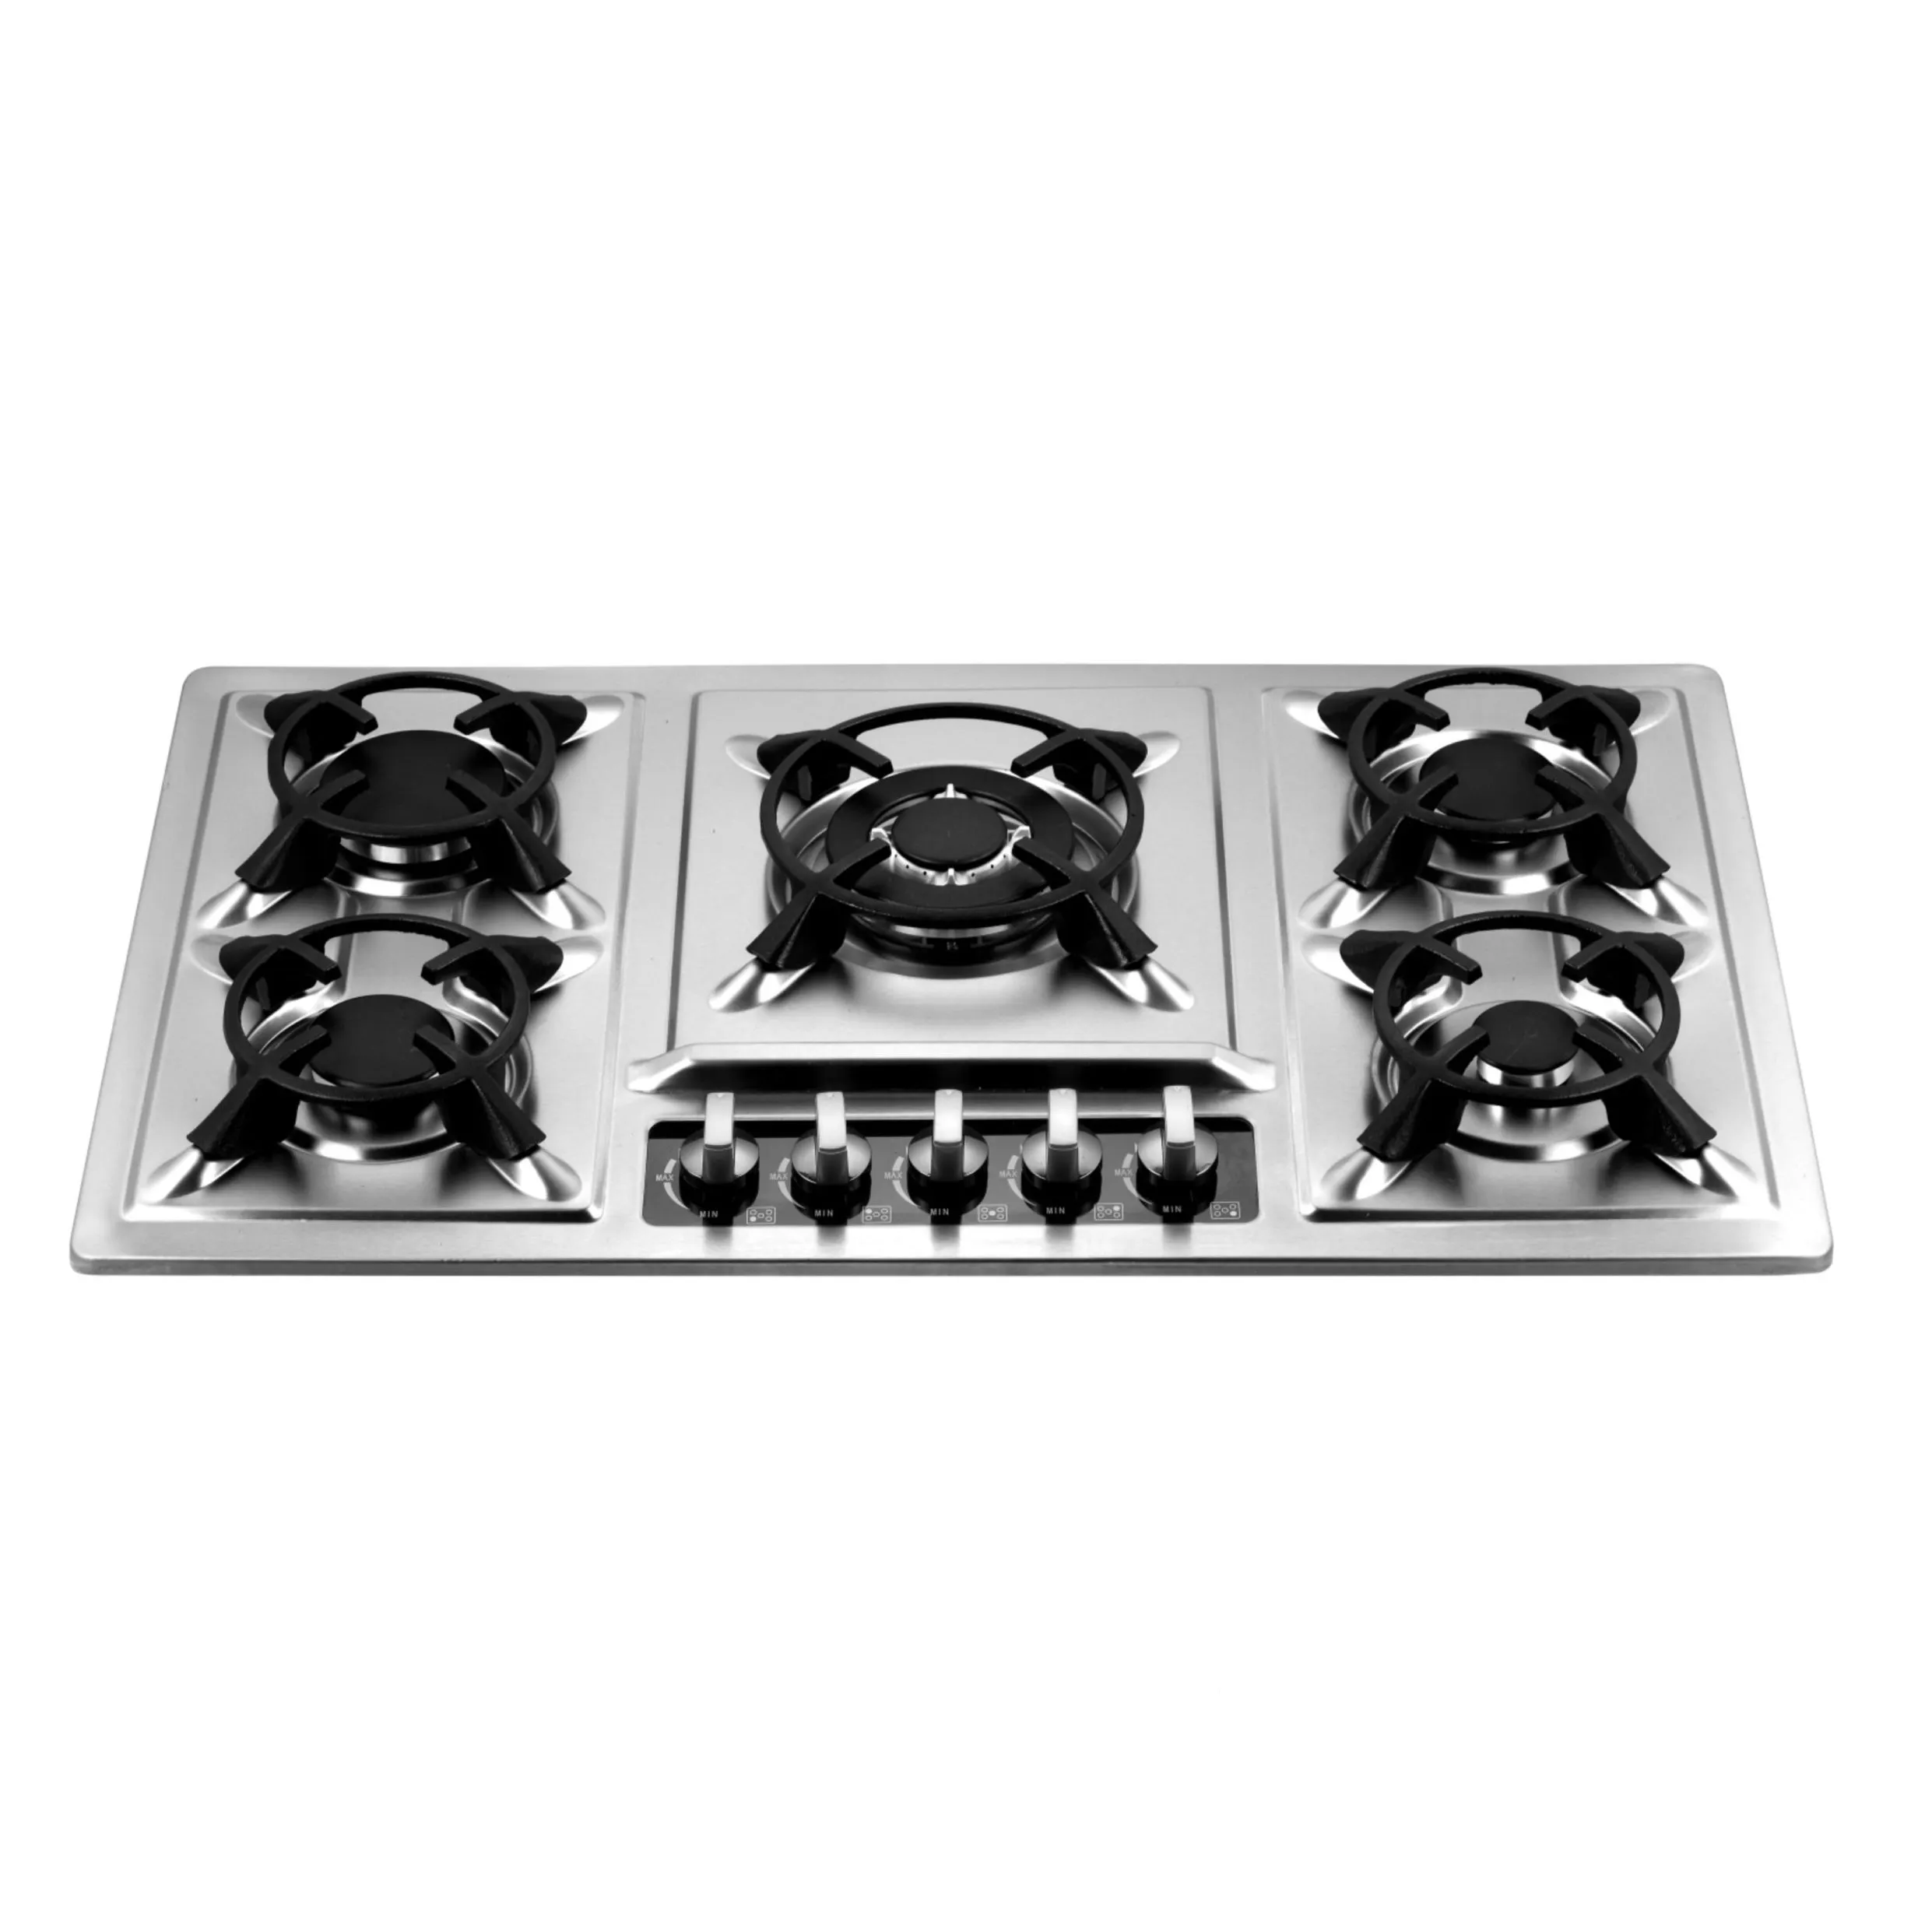 キッチンアプライアンスS.Sバーナーストーブ鋳鉄鍋サポート内蔵クックトップ5バーナー5リングガスクッカー